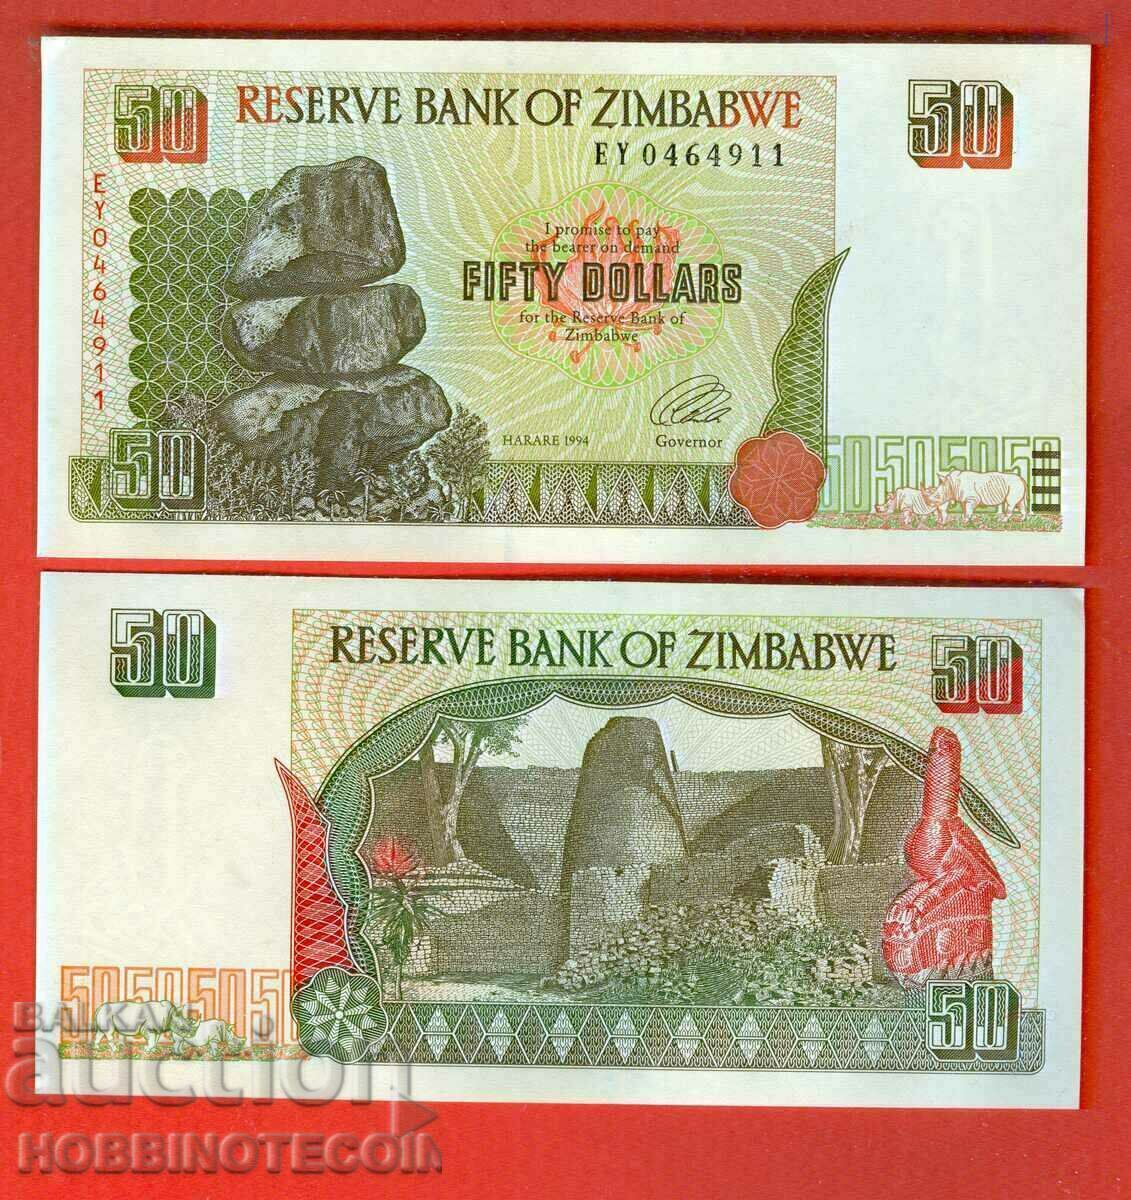 ZIMBABWE ZIMBABWE emisiune de 50 USD - emisiune 1994 NOU UNC